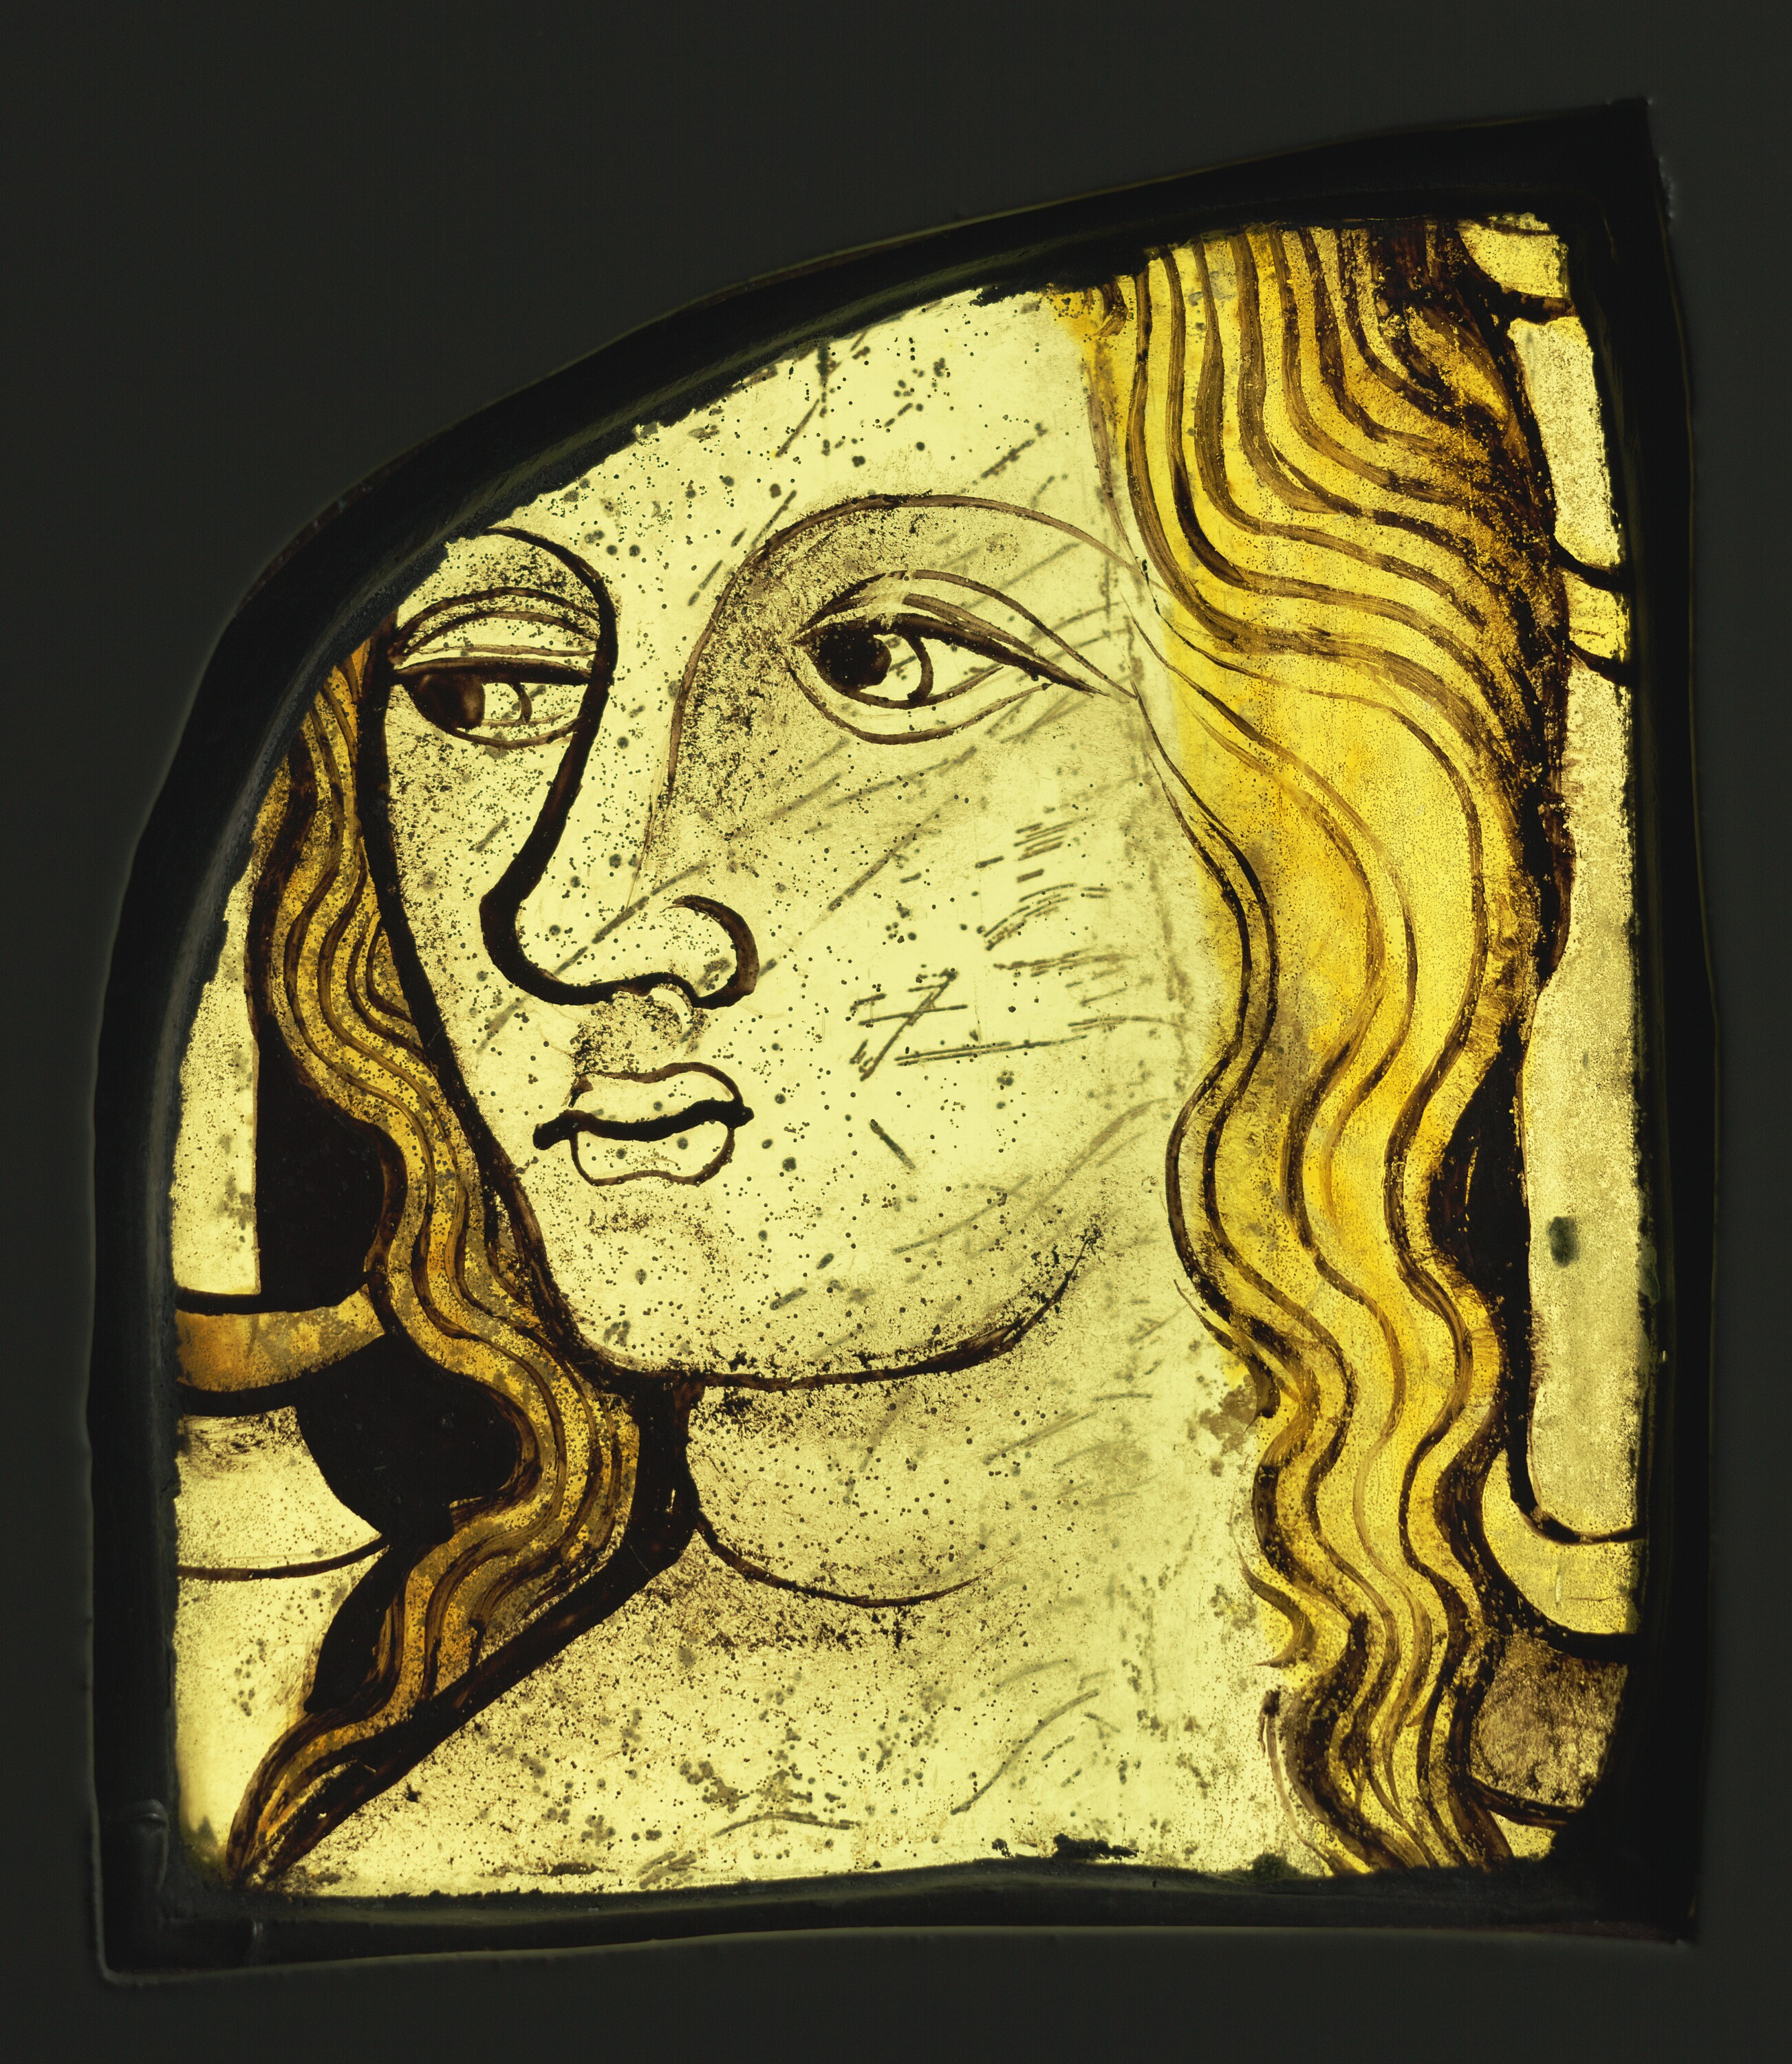 Голова женщины by Неизвестный Художни - ок. 1420–1430 - 15.4 × 11.9 × 1 см 